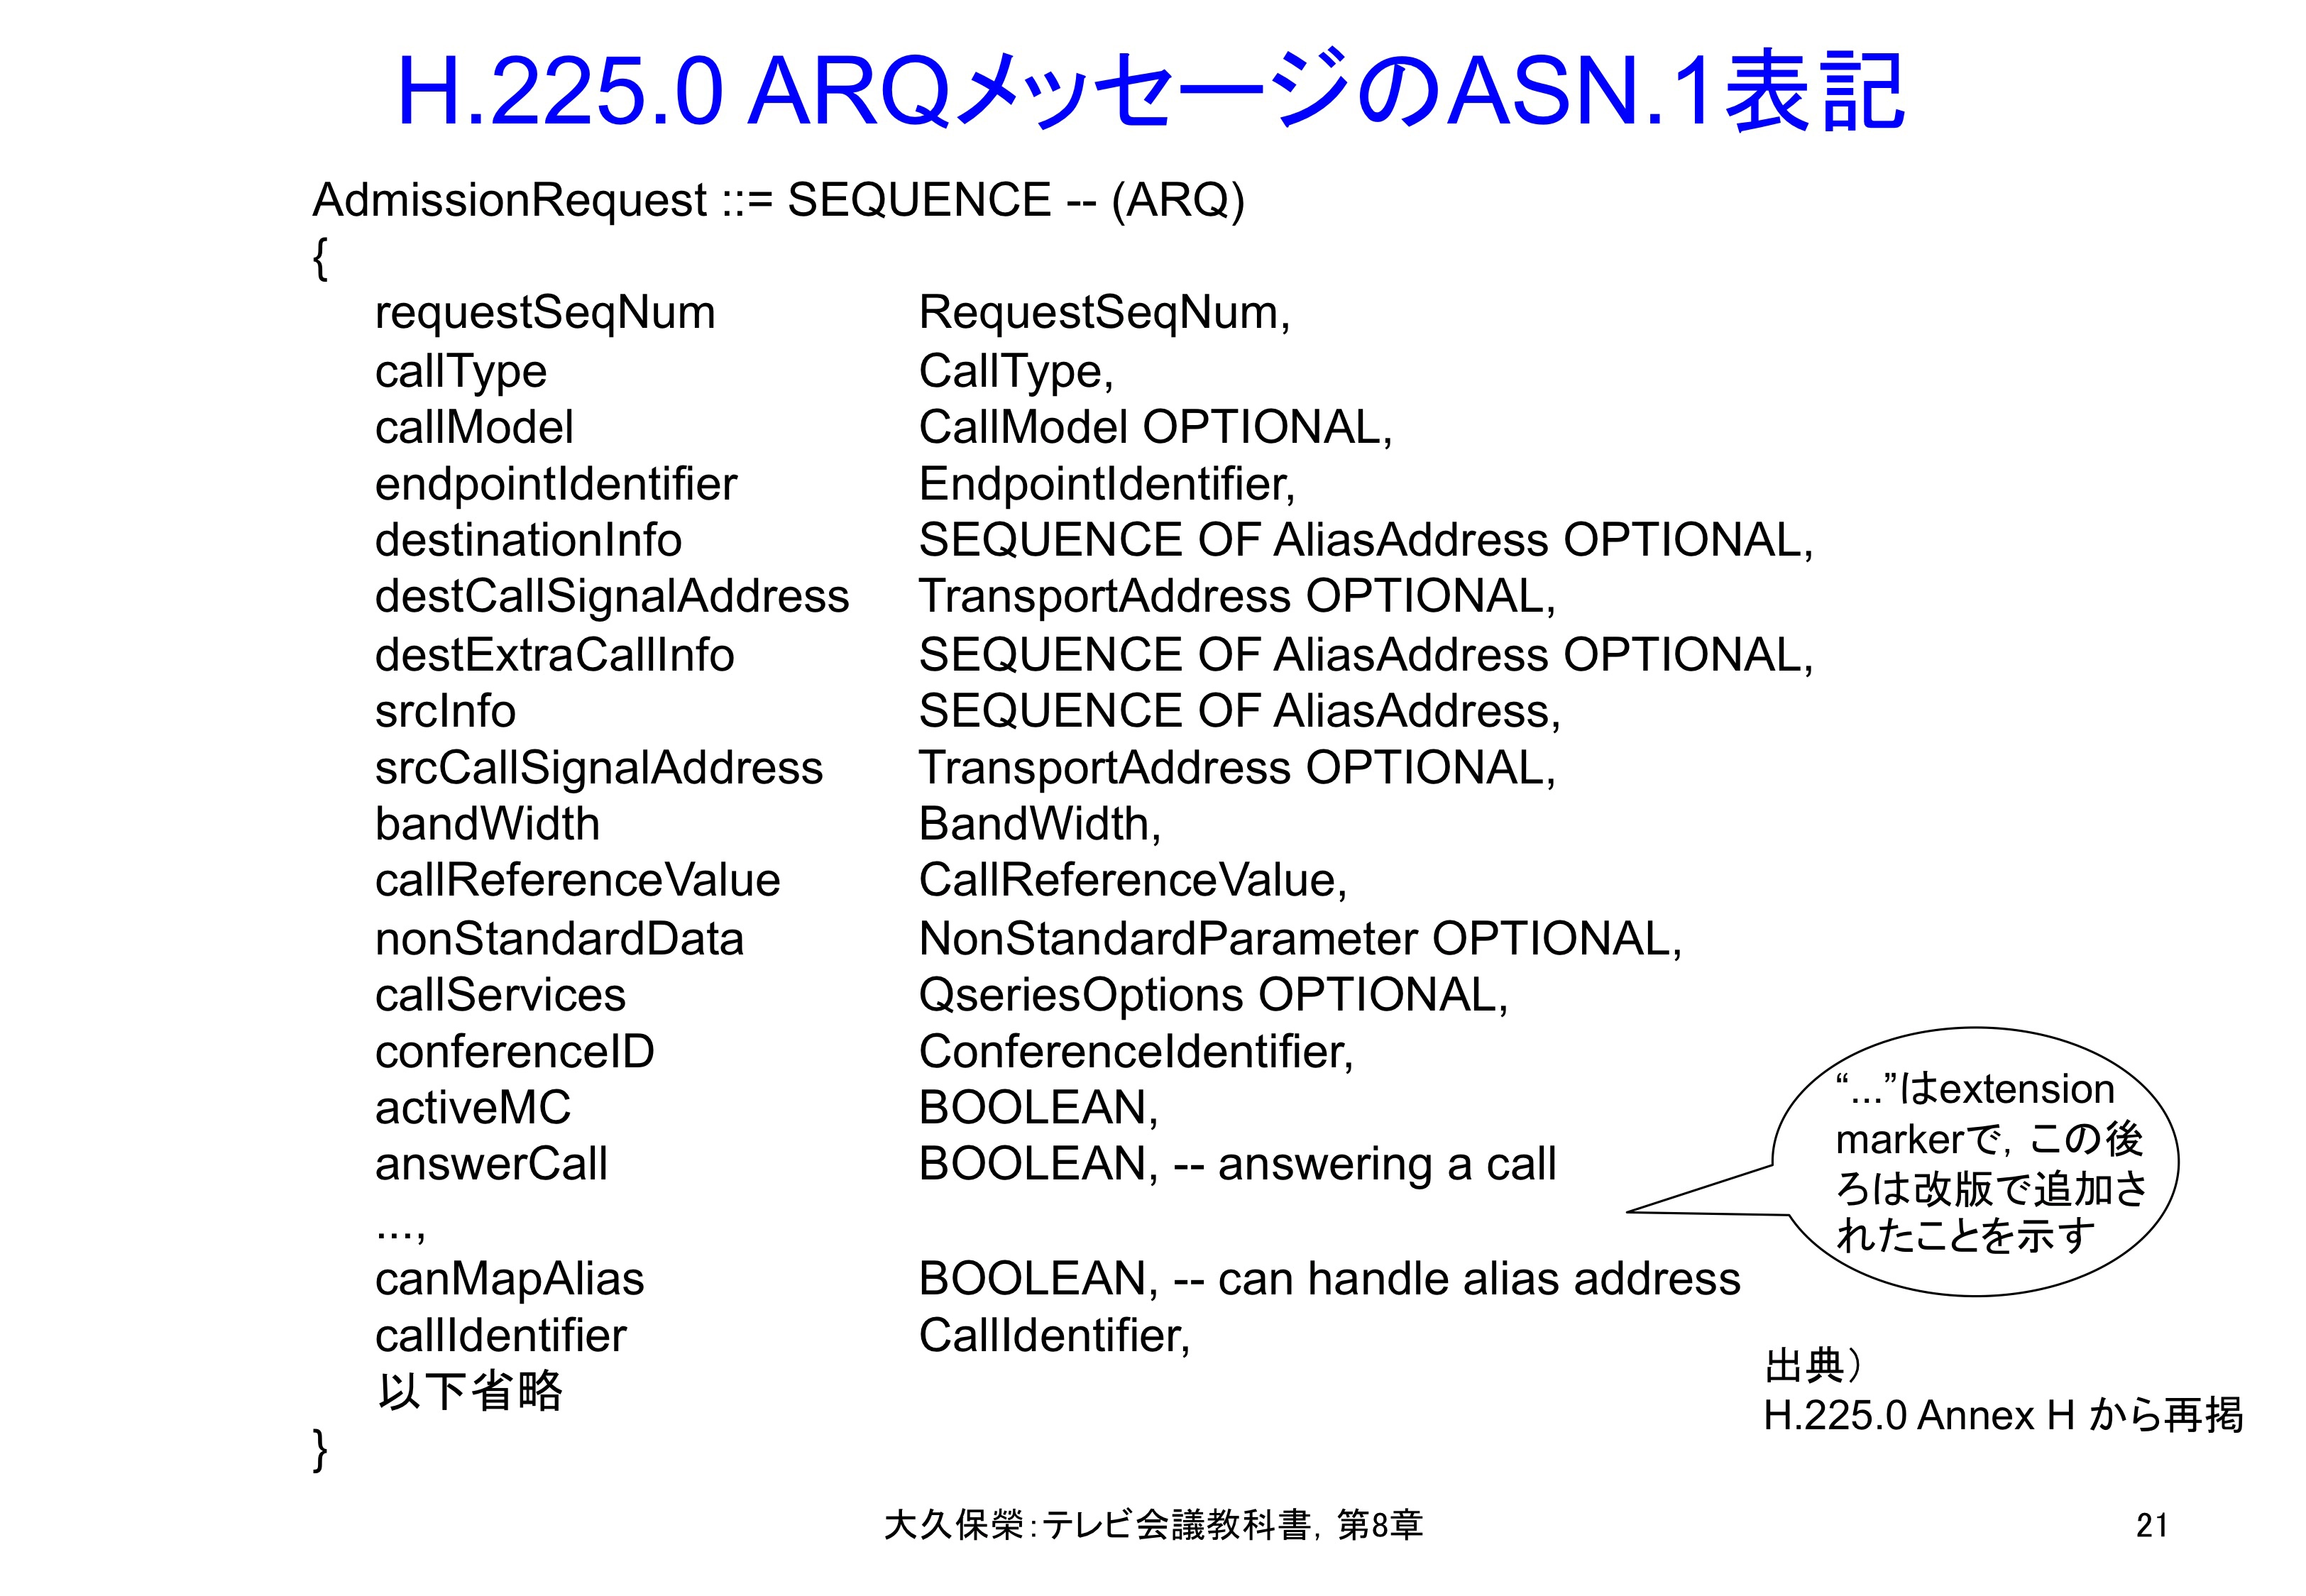 図8-21 H.225.0 ARQメッセージのASN.1表記